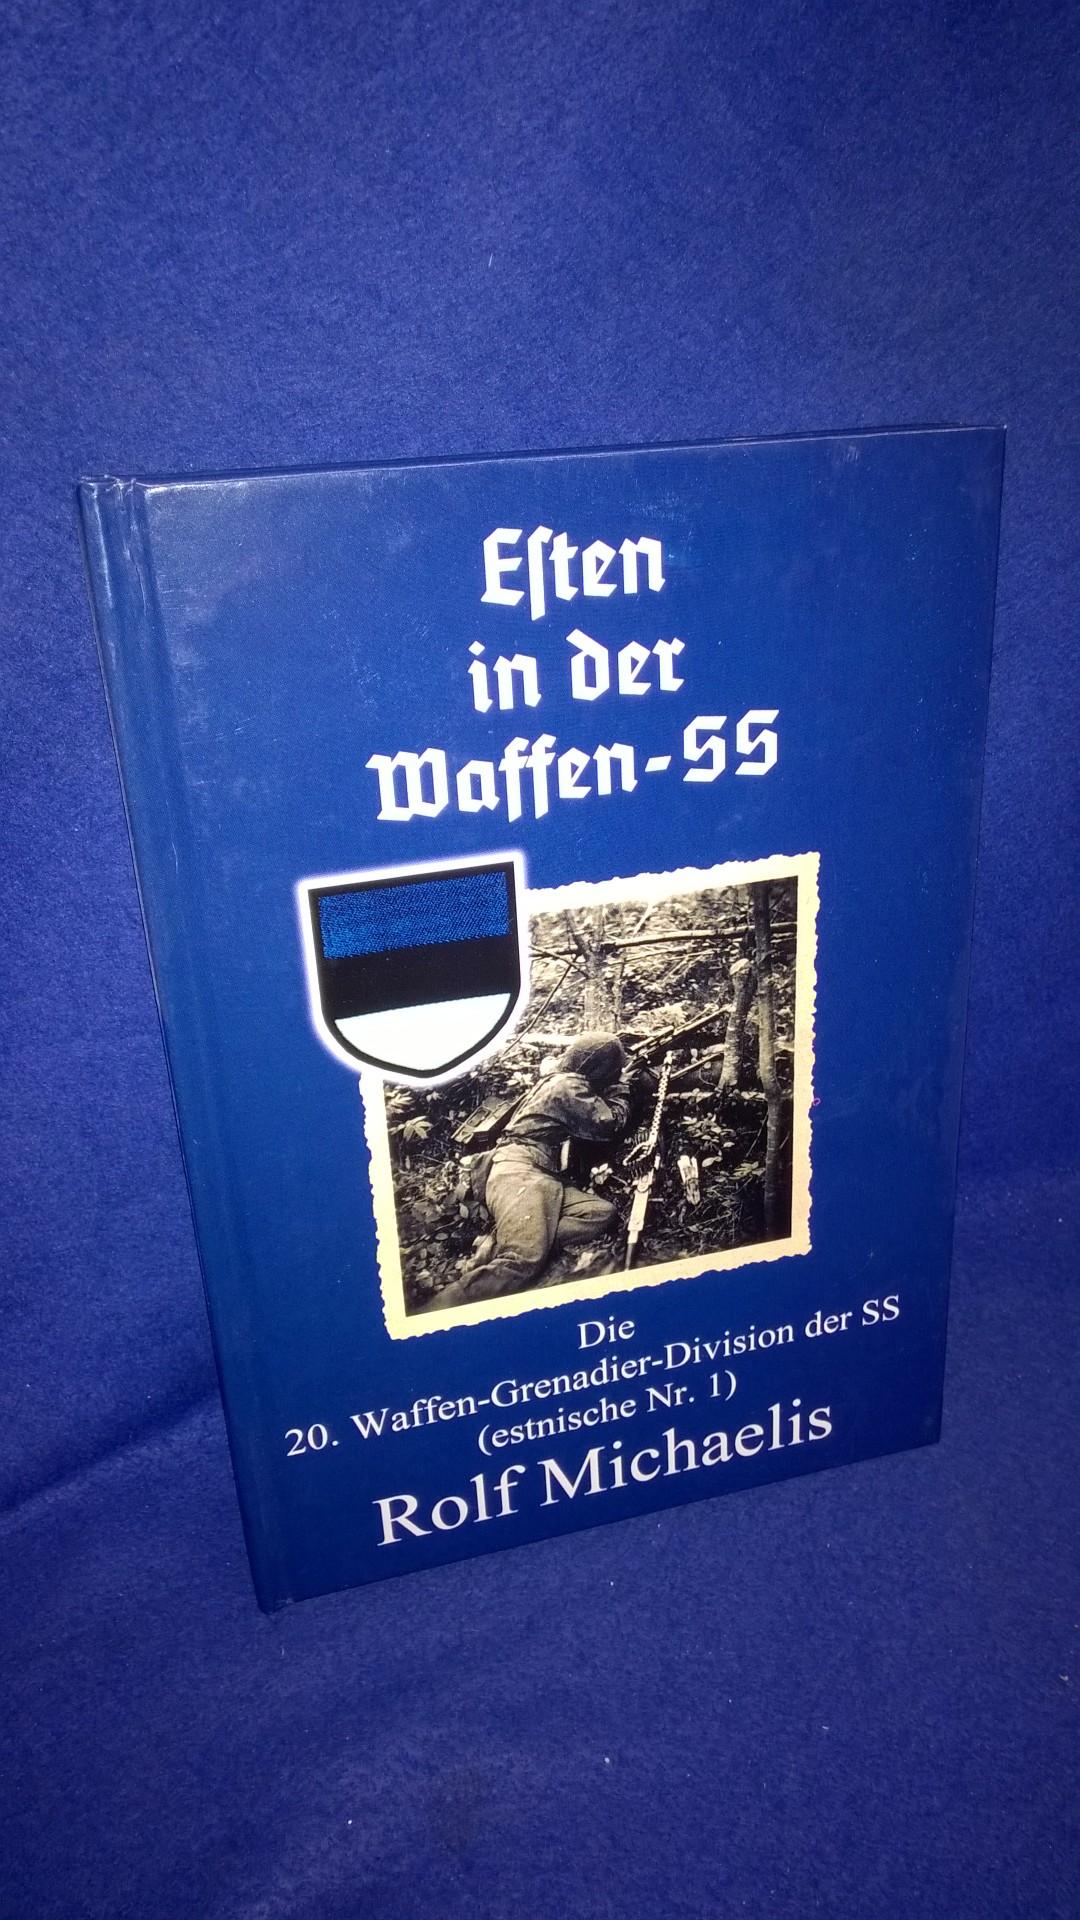 Esten in der Waffen-SS. Die 20. Waffen-Grenadier-Division der SS (estnische Nr. 1).